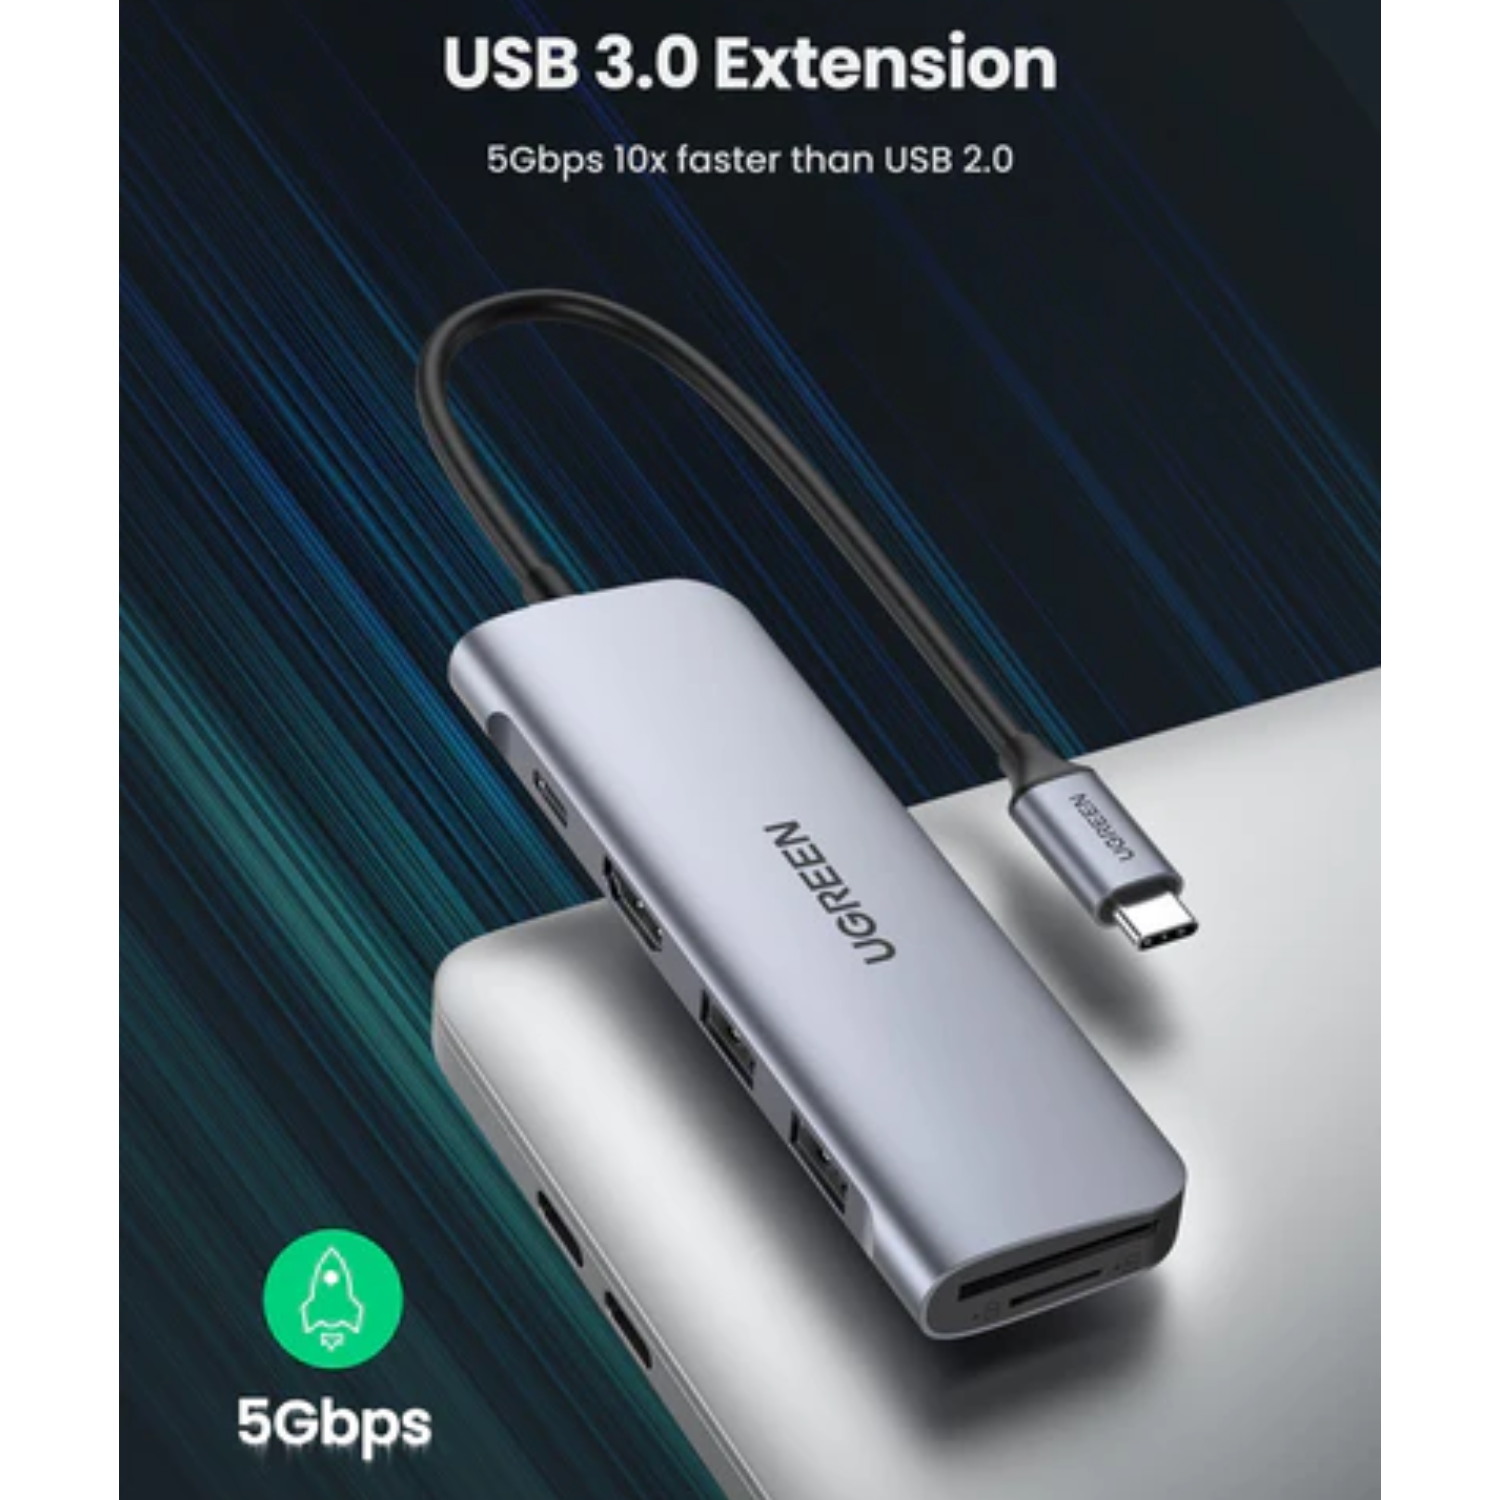 Hub adaptador Ugreen CM195 USB-C 6-en-1 (70411)